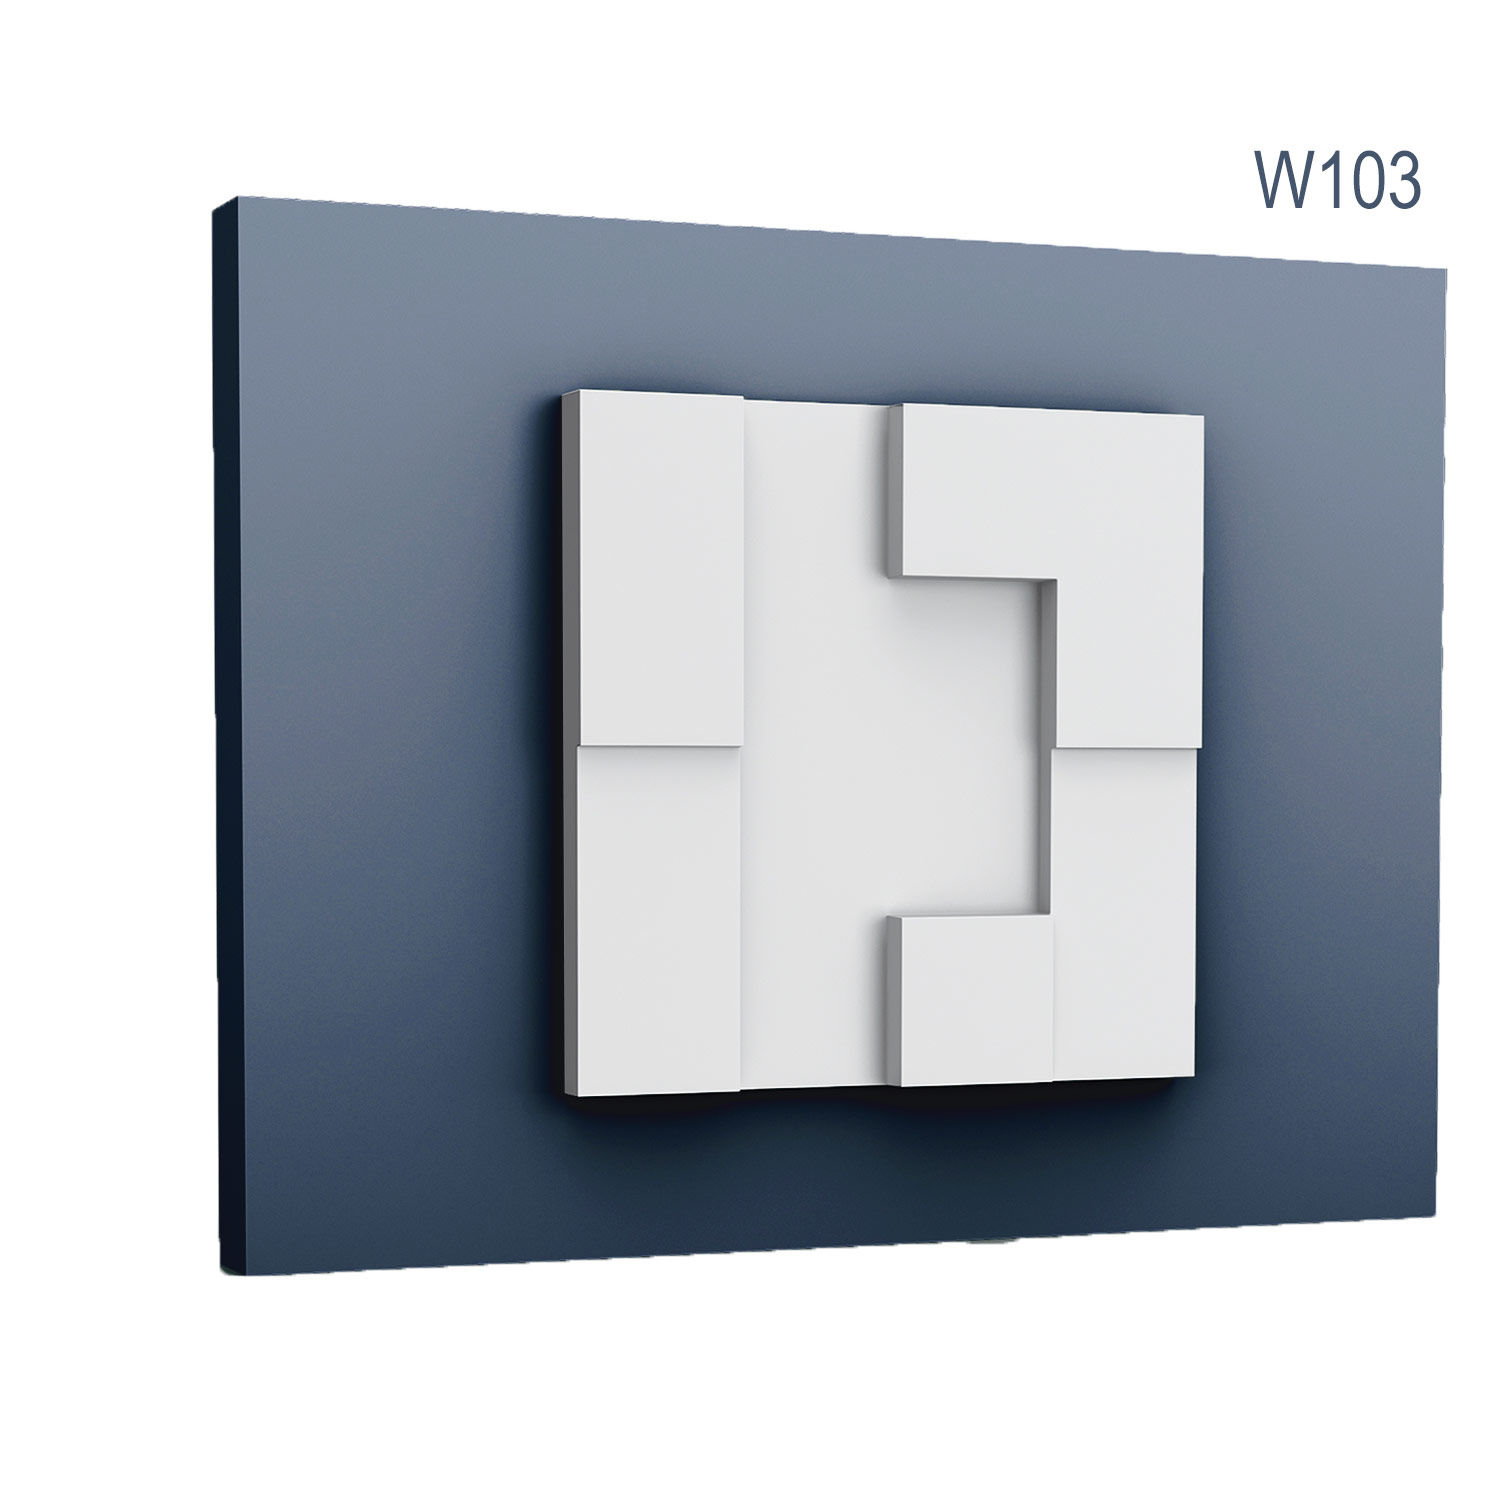 Panel Modern W103, Dimensiuni: 33.3 X 33.3 X 2.5 cm, Orac Decor Orac Decor